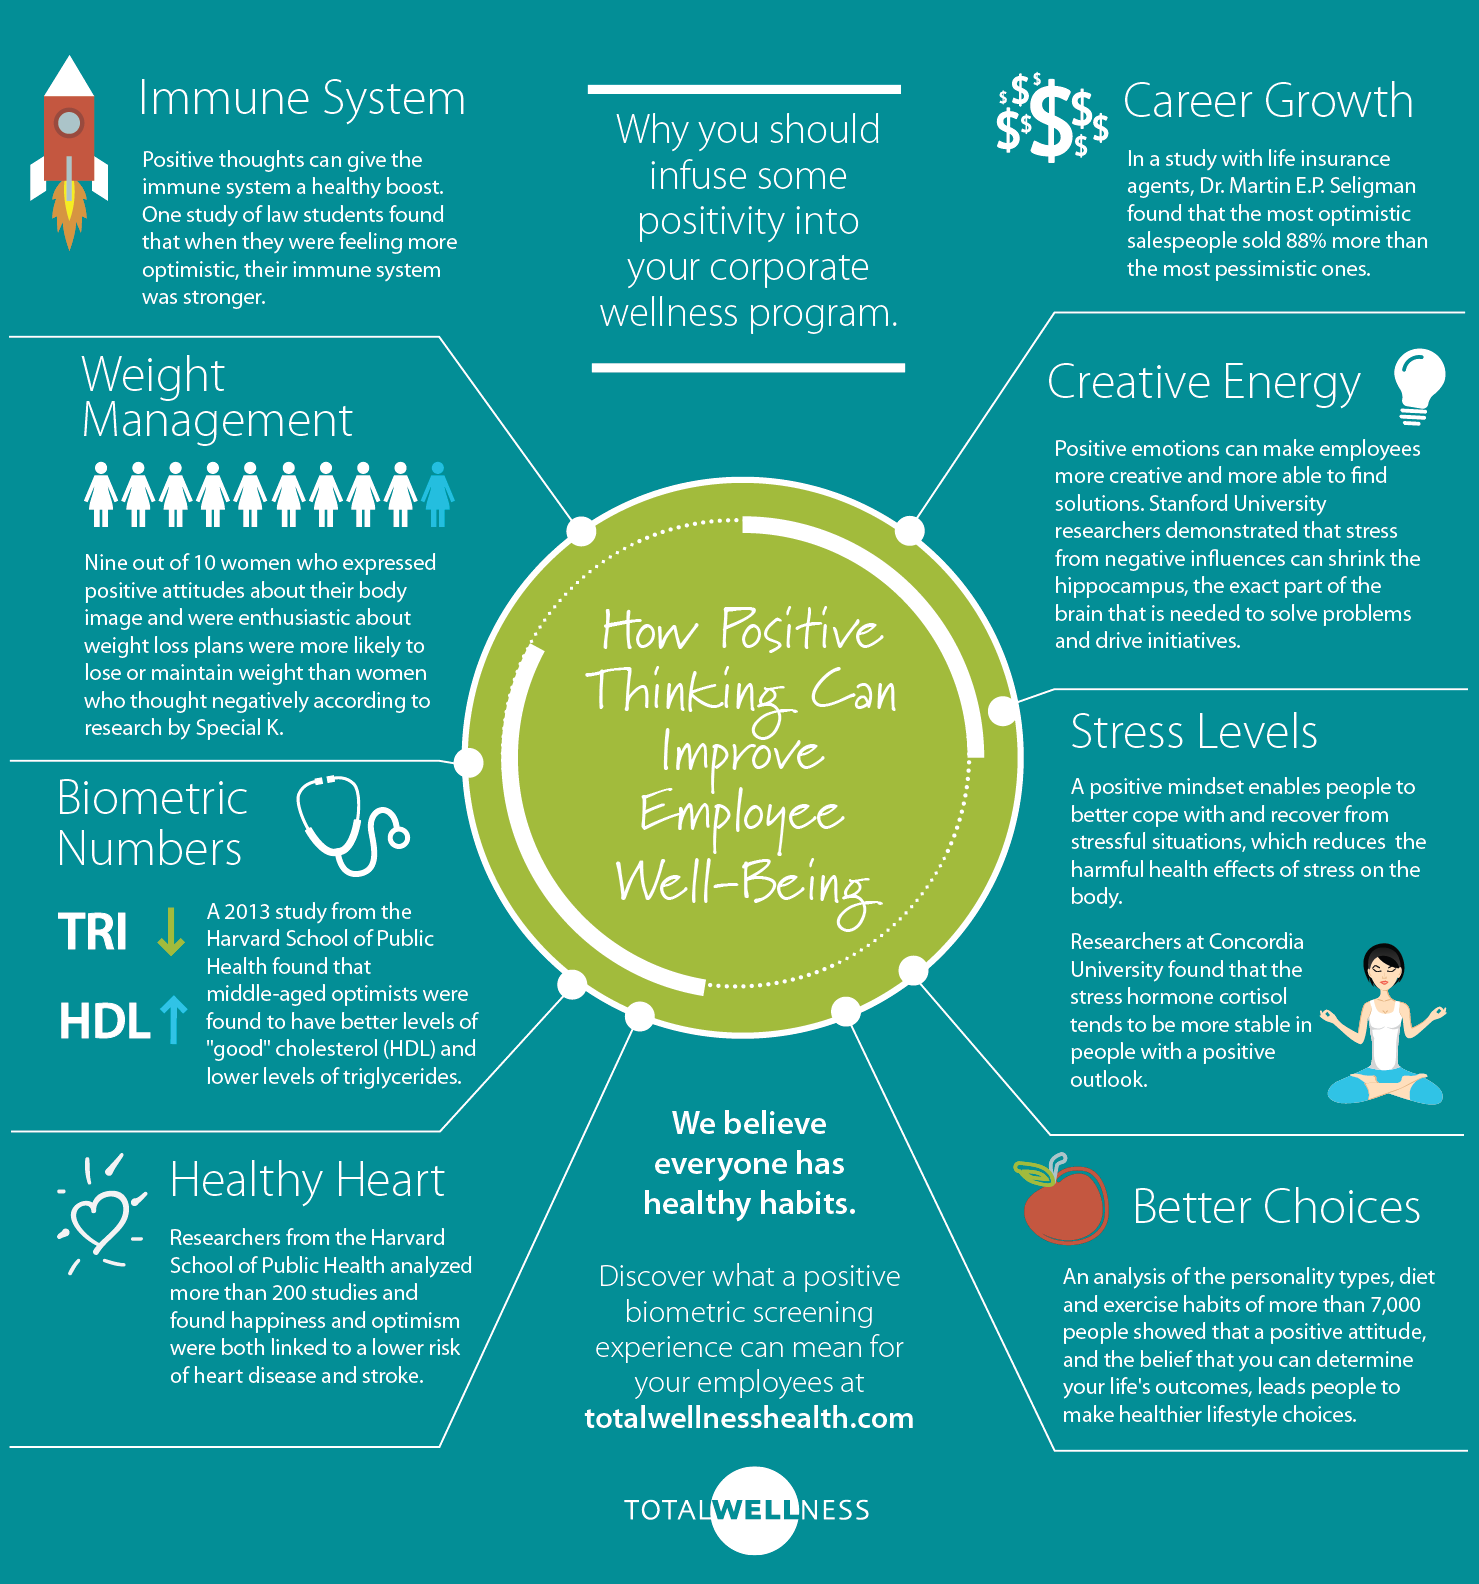 happy habits infographic